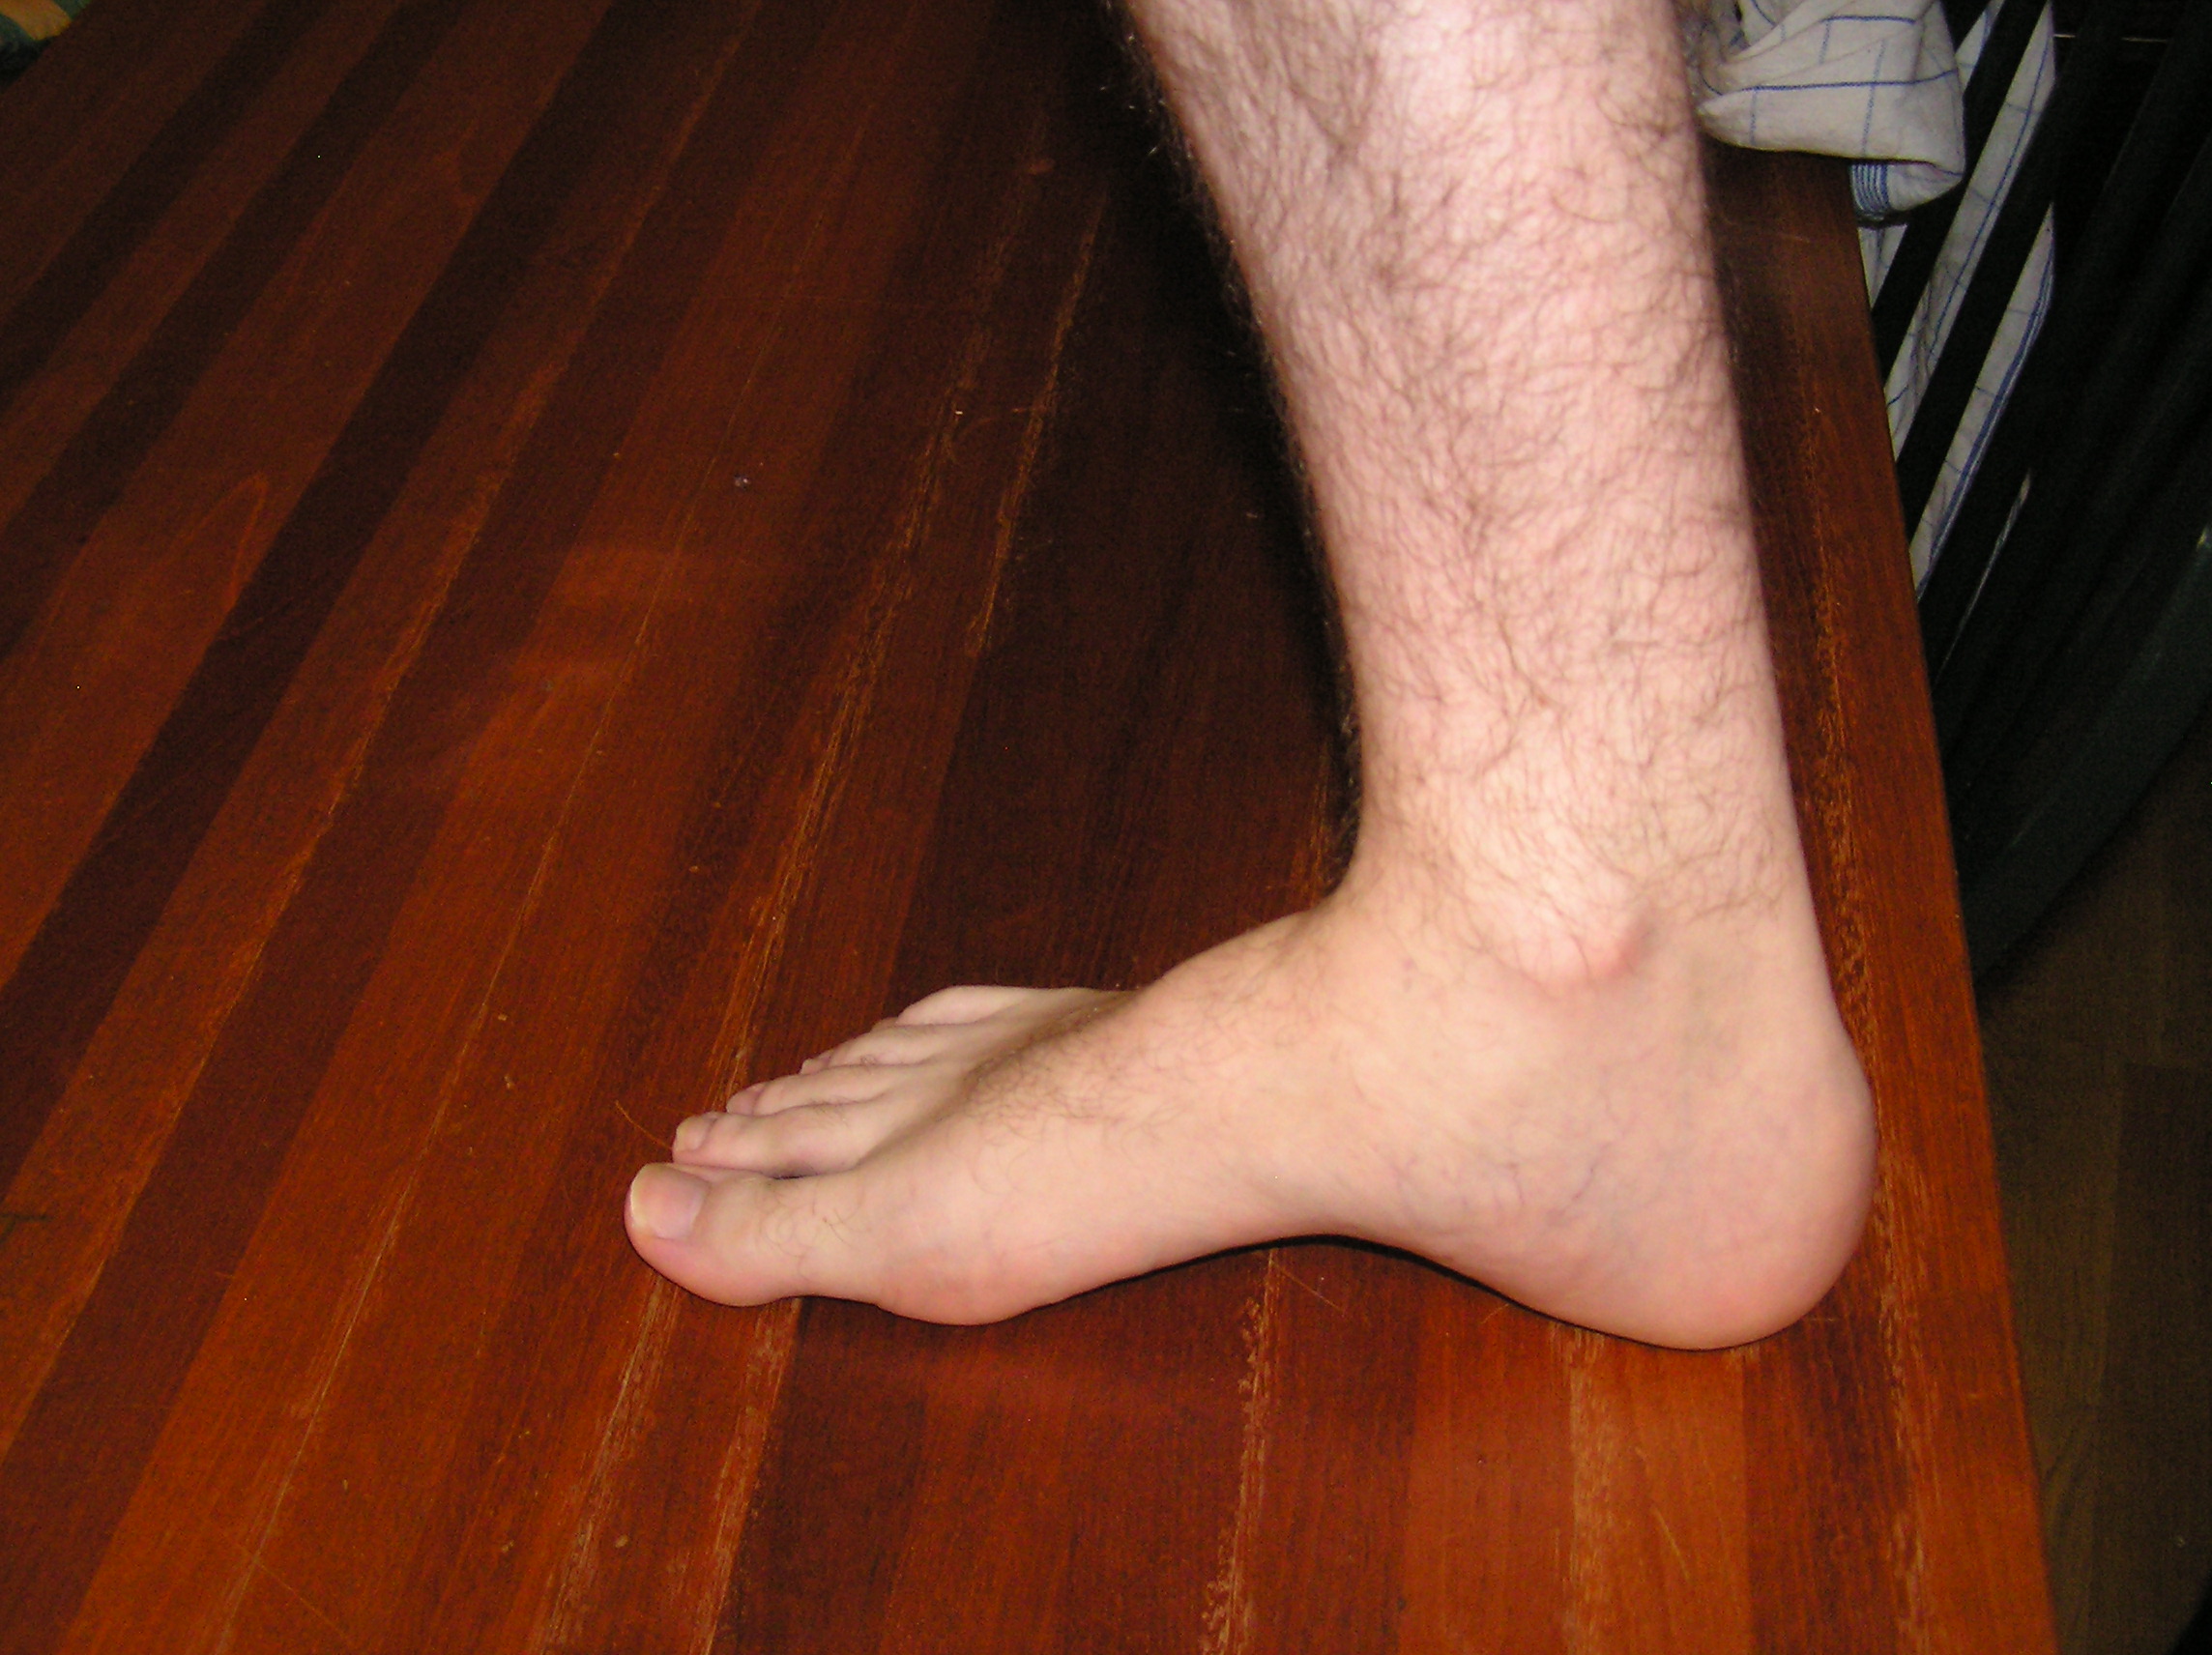 Male feet clips